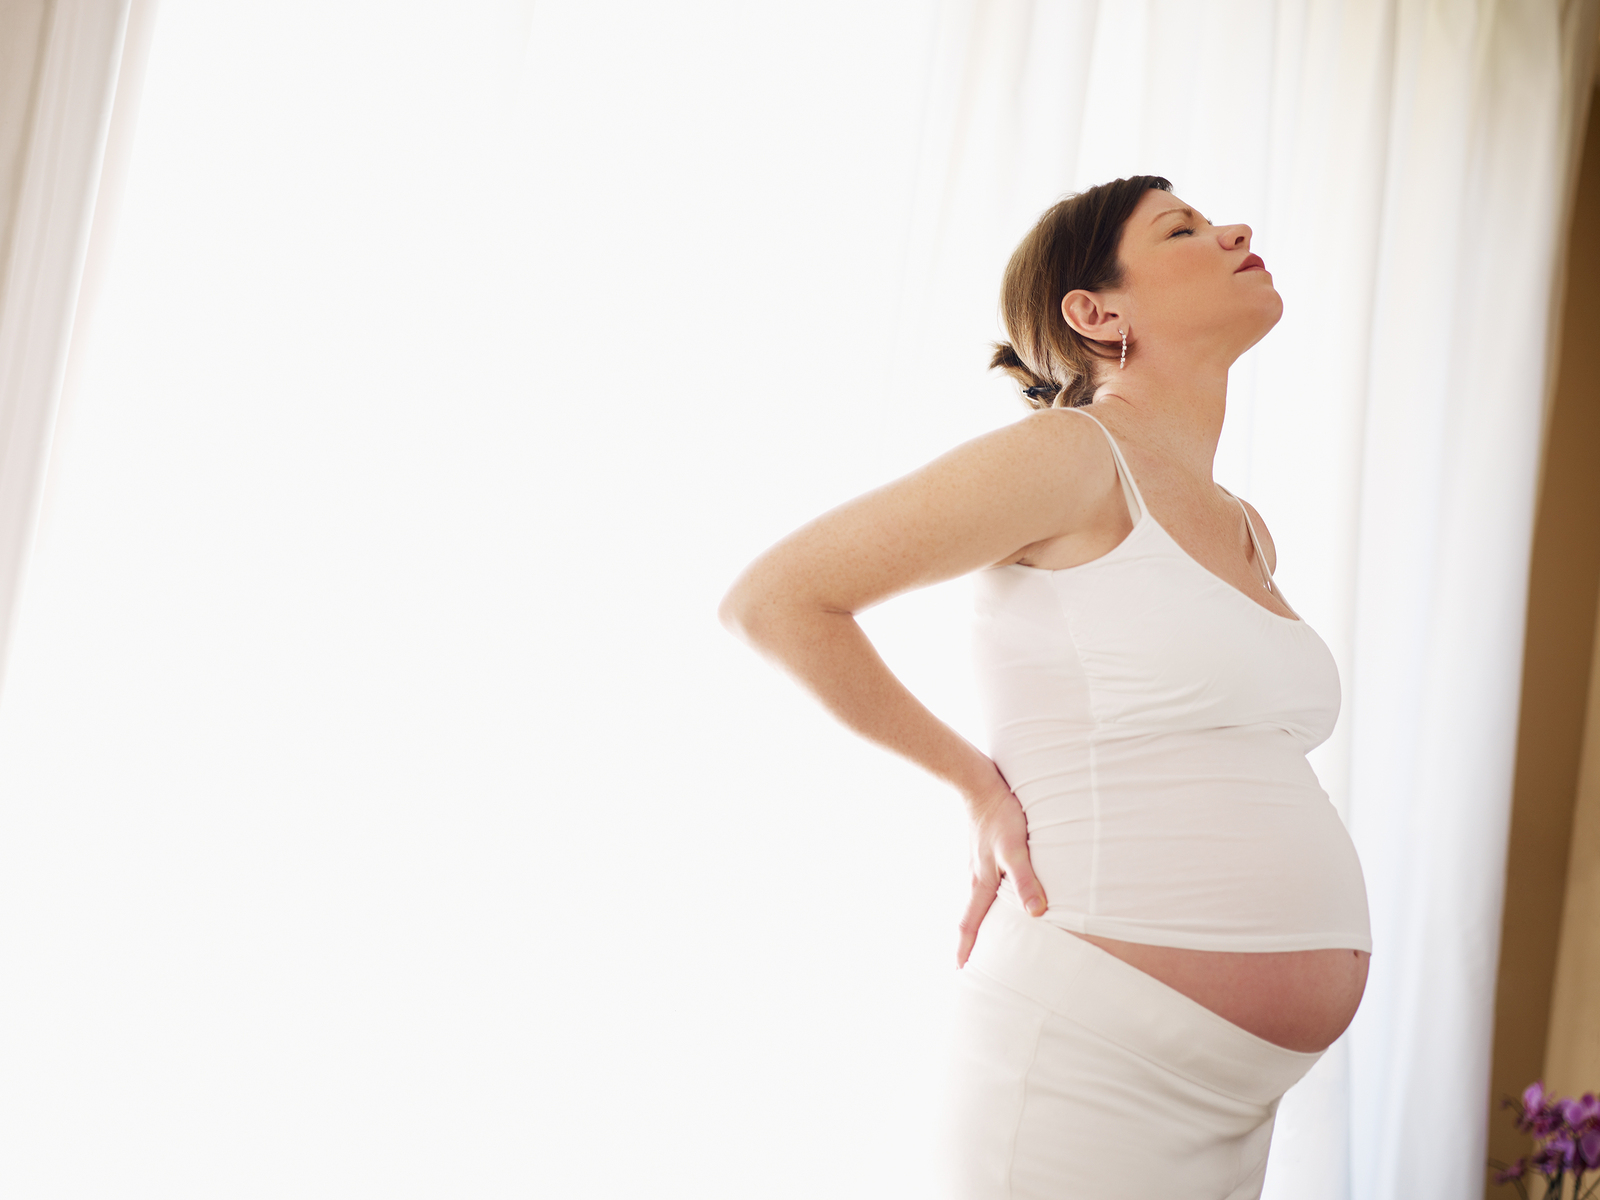 Fattori di rischio per pelvic girdle pain dopo il parto e per mal di schiena dopo il parto legati alla gravidanza